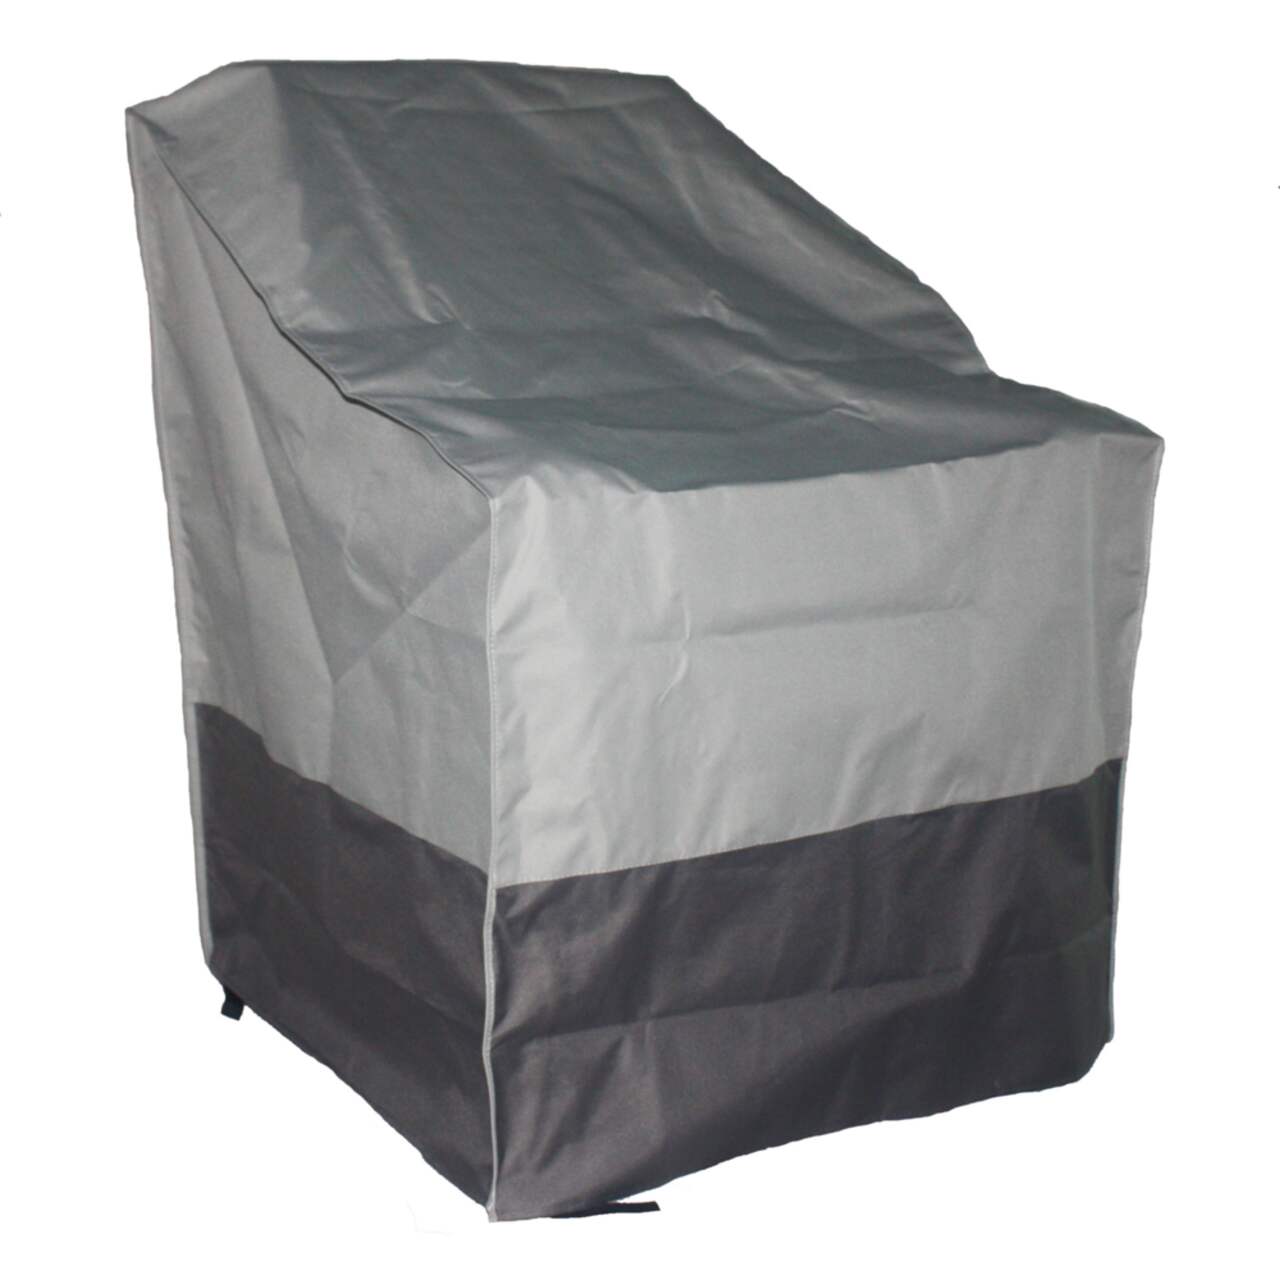 TRIPEL - Housse hydrofuge avec protection anti-UV pour chaise